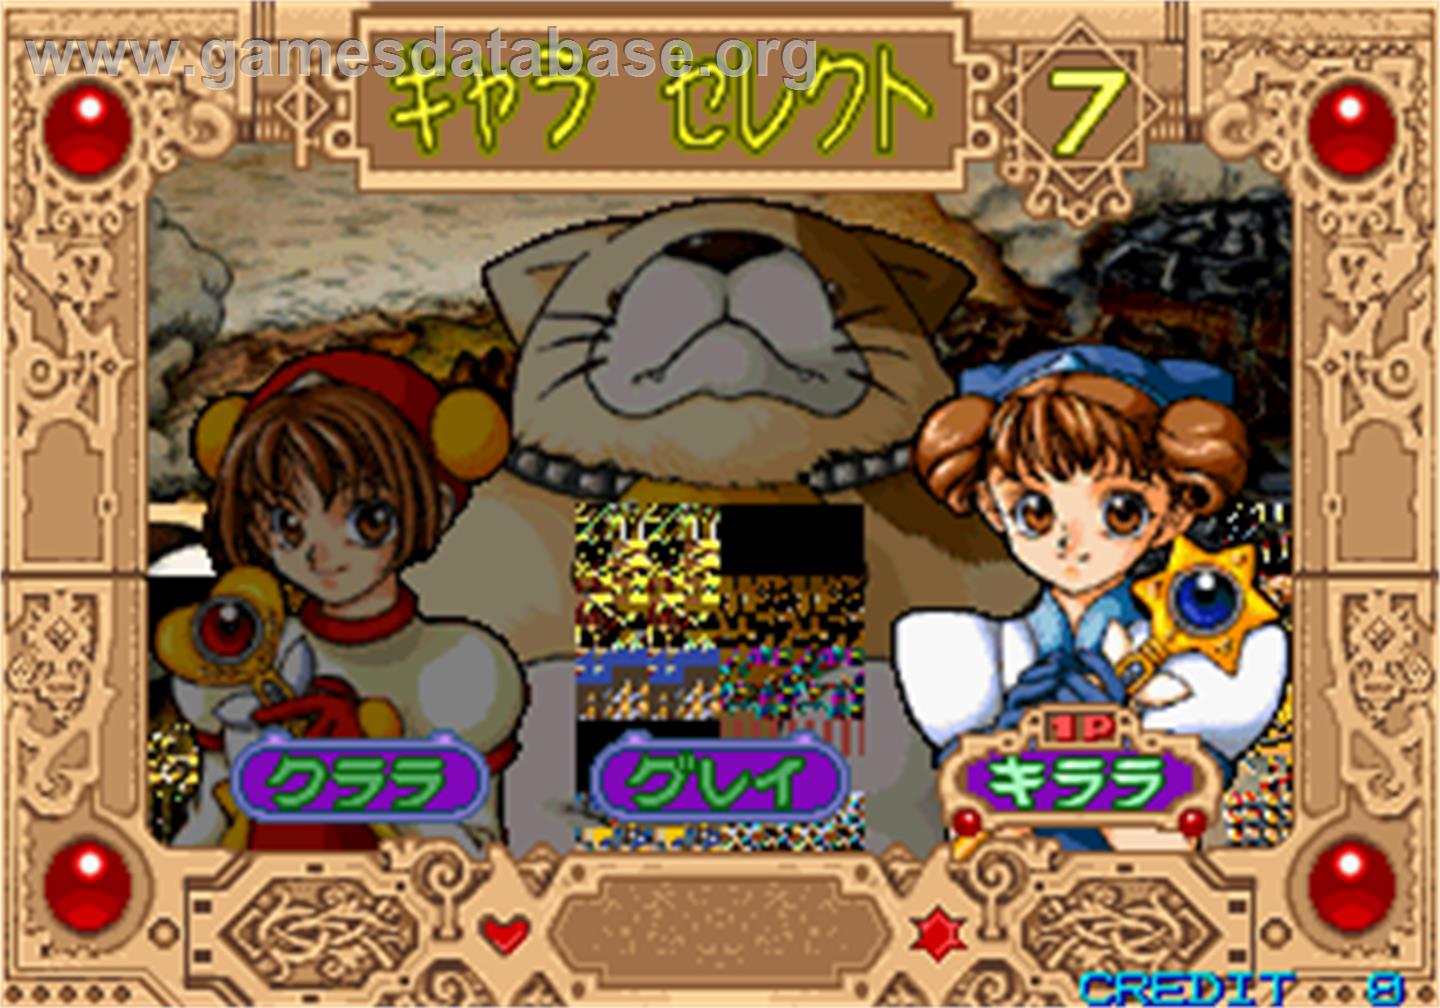 Princess Clara Daisakusen - Arcade - Artwork - Select Screen